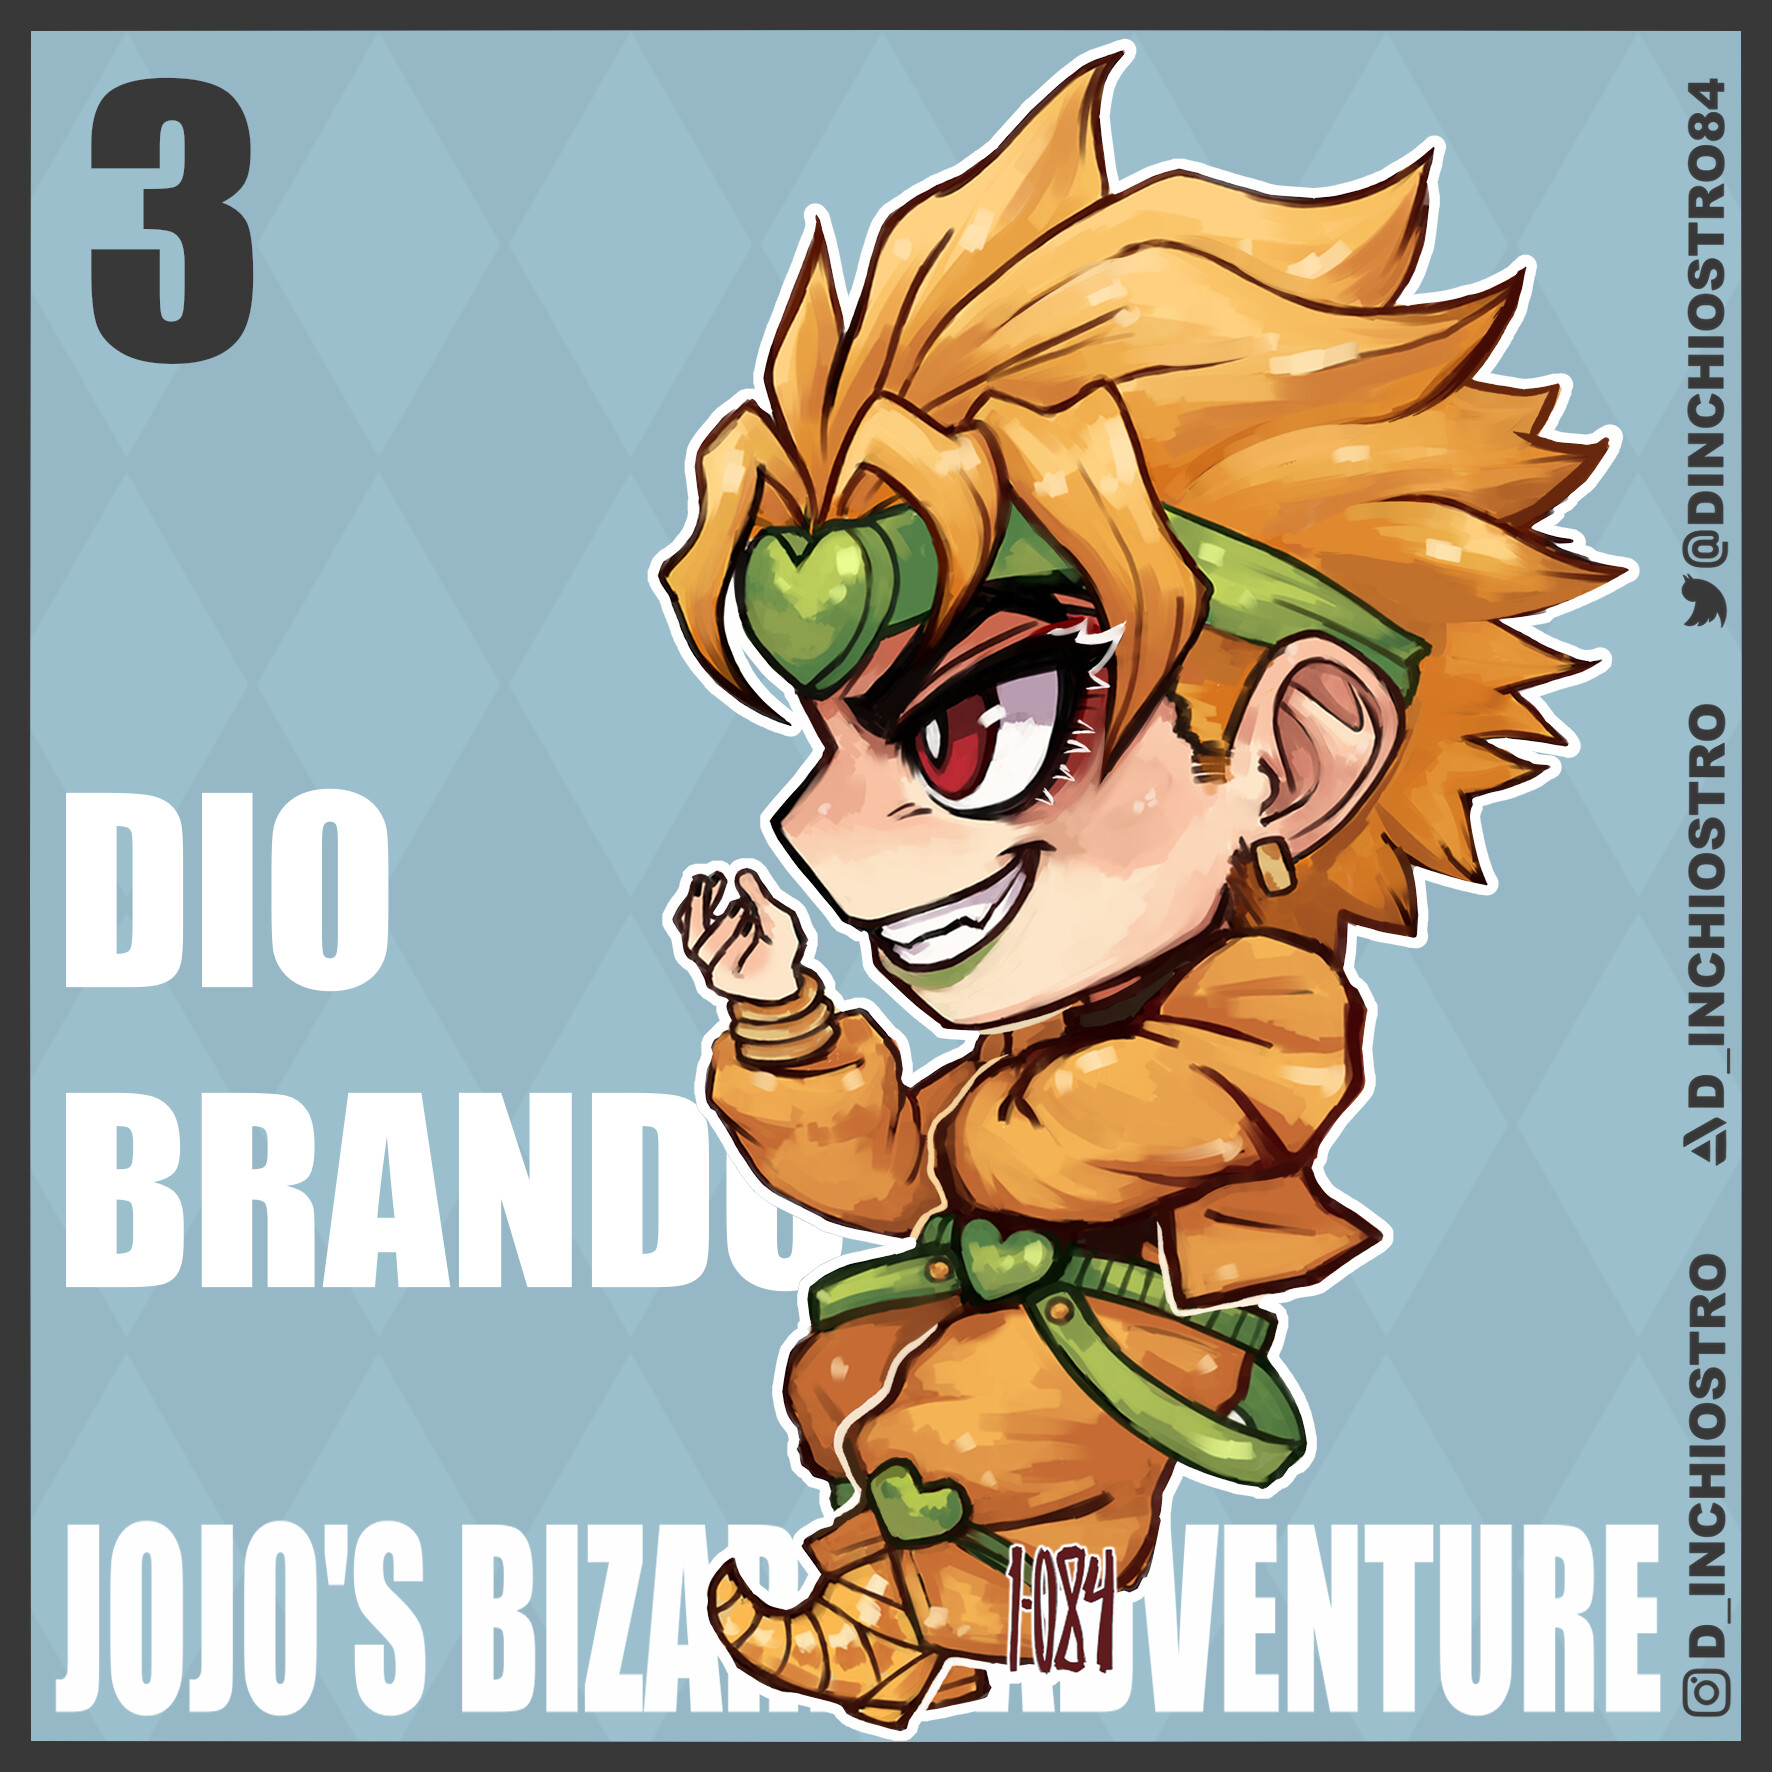 ArtStation - Jojo's Bizarre Adventure- Dio Brando